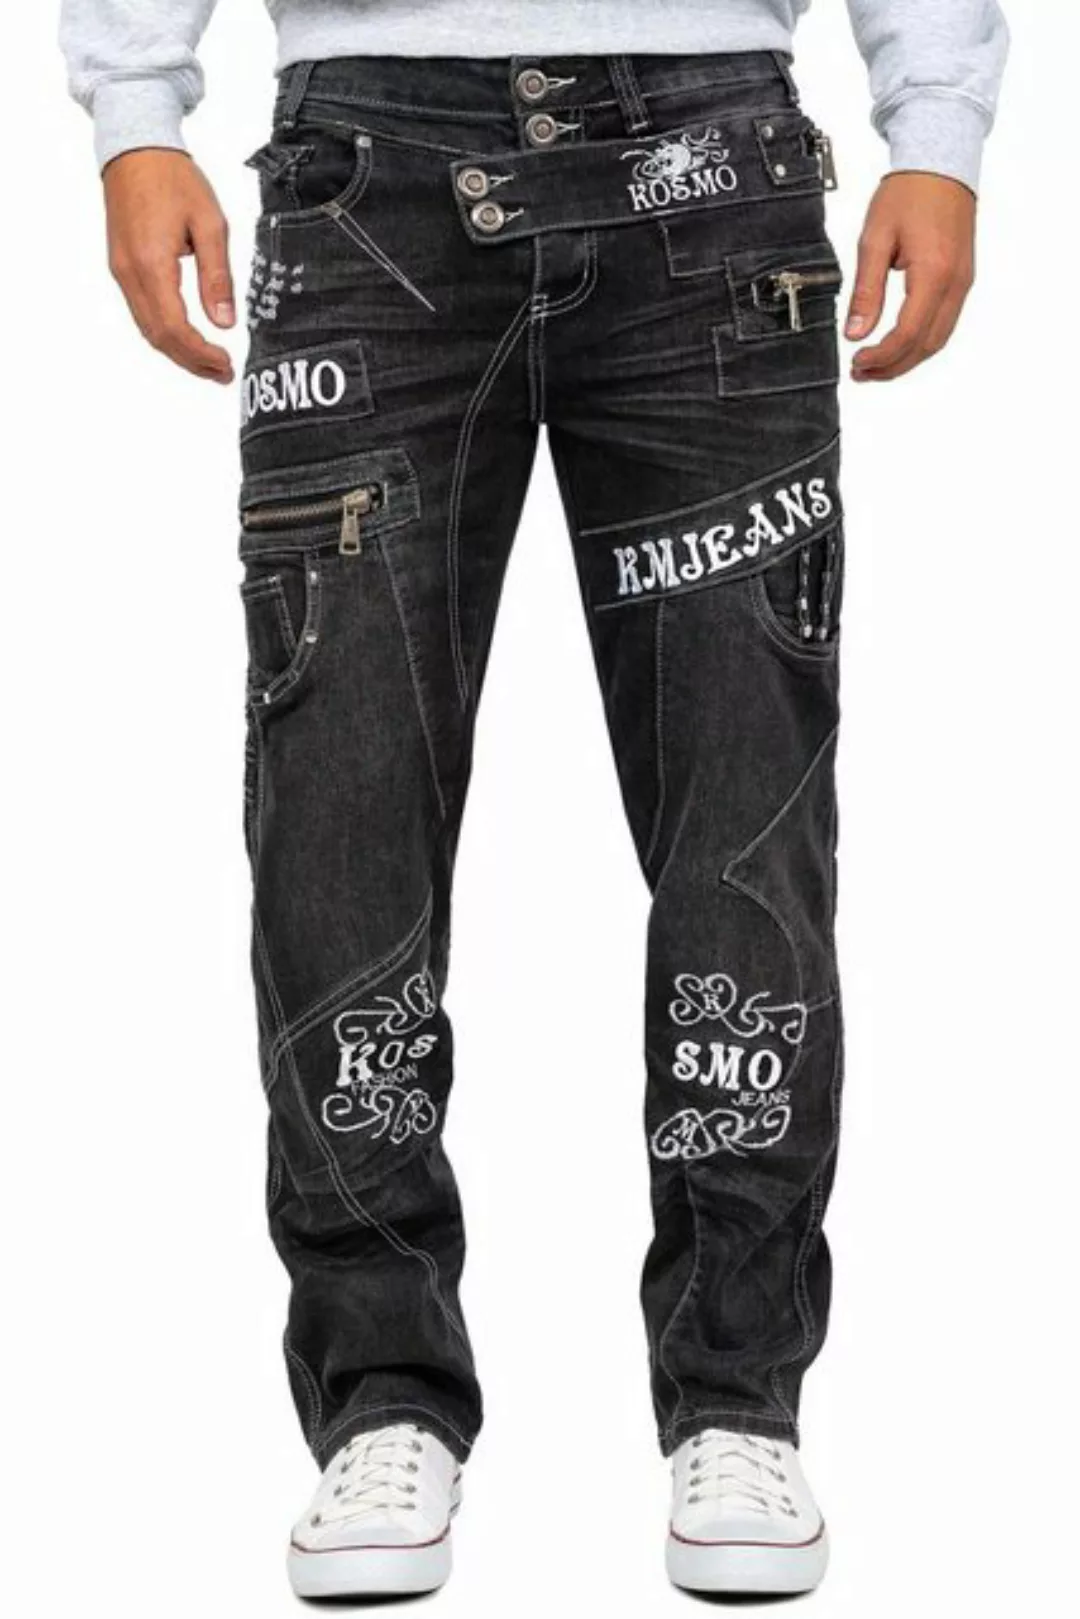 Kosmo Lupo 5-Pocket-Jeans Auffällige Herren Hose BA-KM051 Markante Waschnun günstig online kaufen